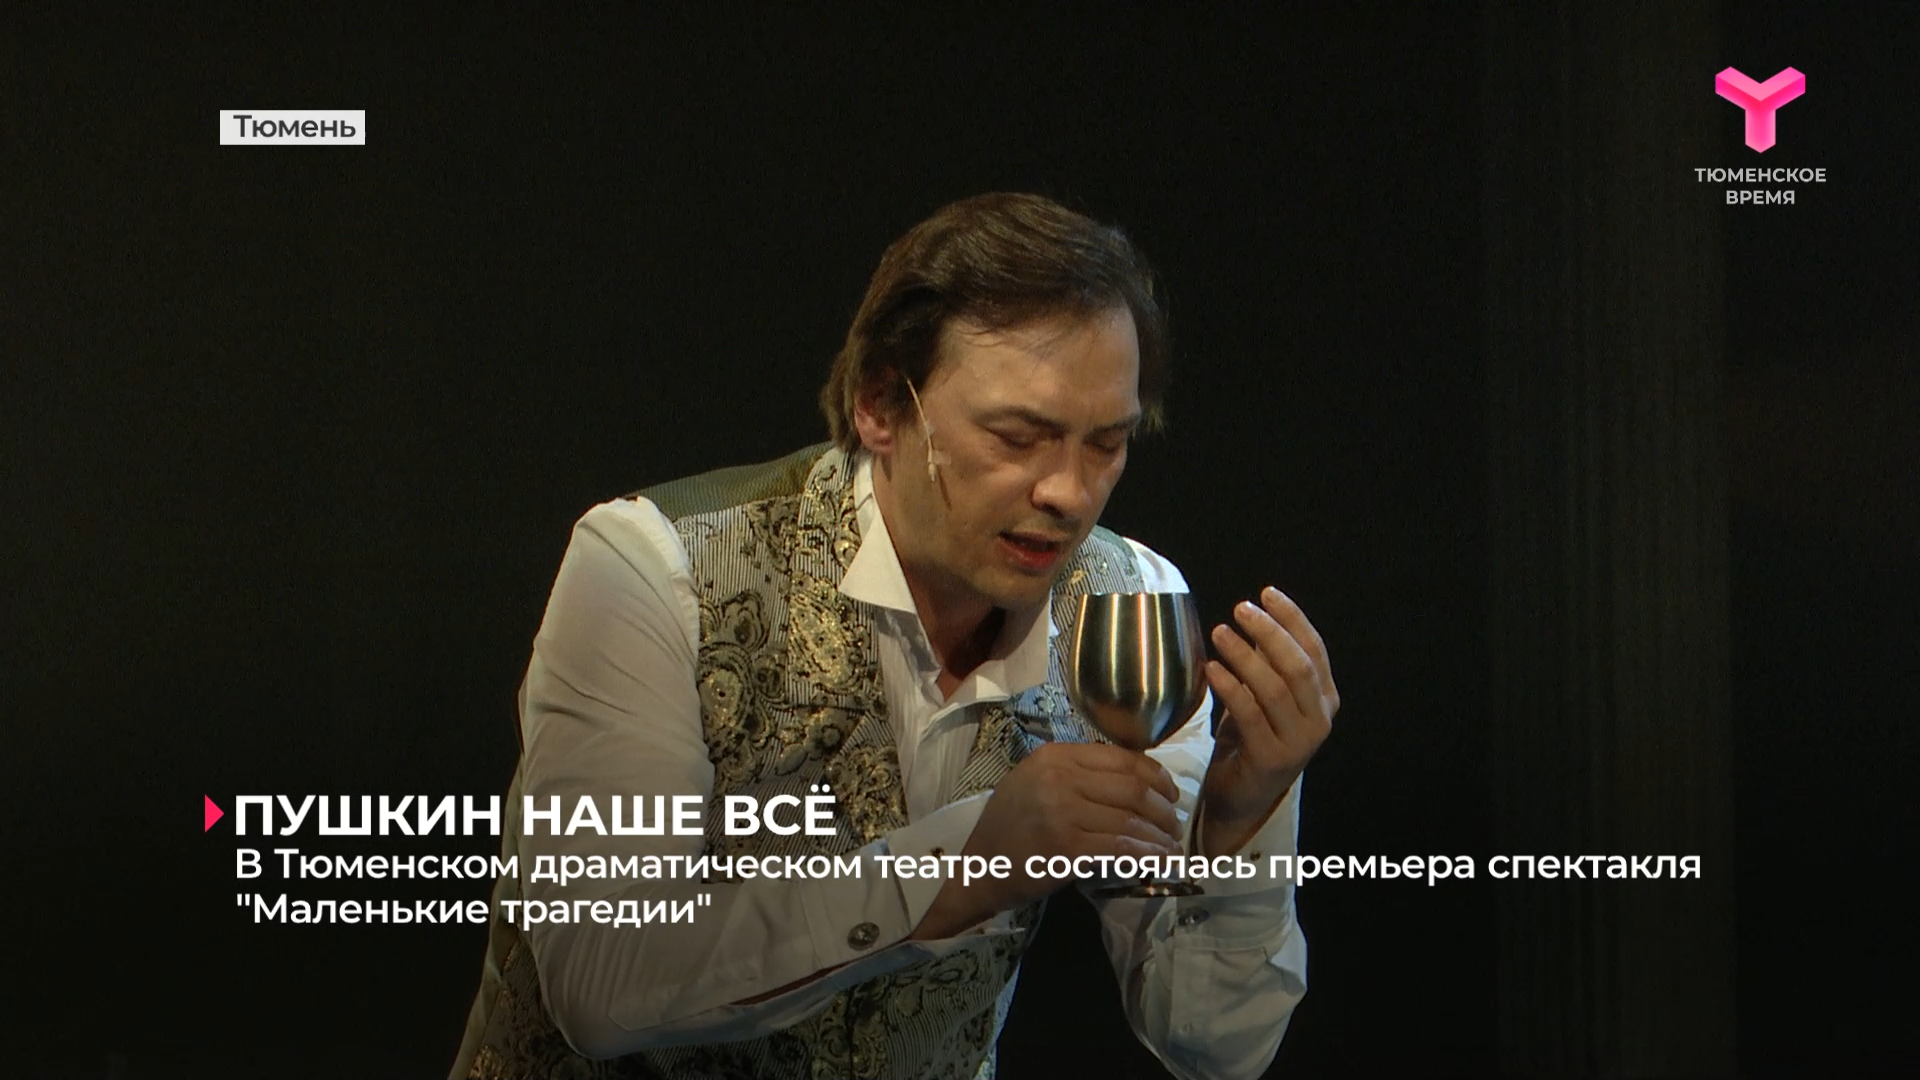 В Тюменском драматическом театре состоялась премьера спектакля "Маленькие трагедии"